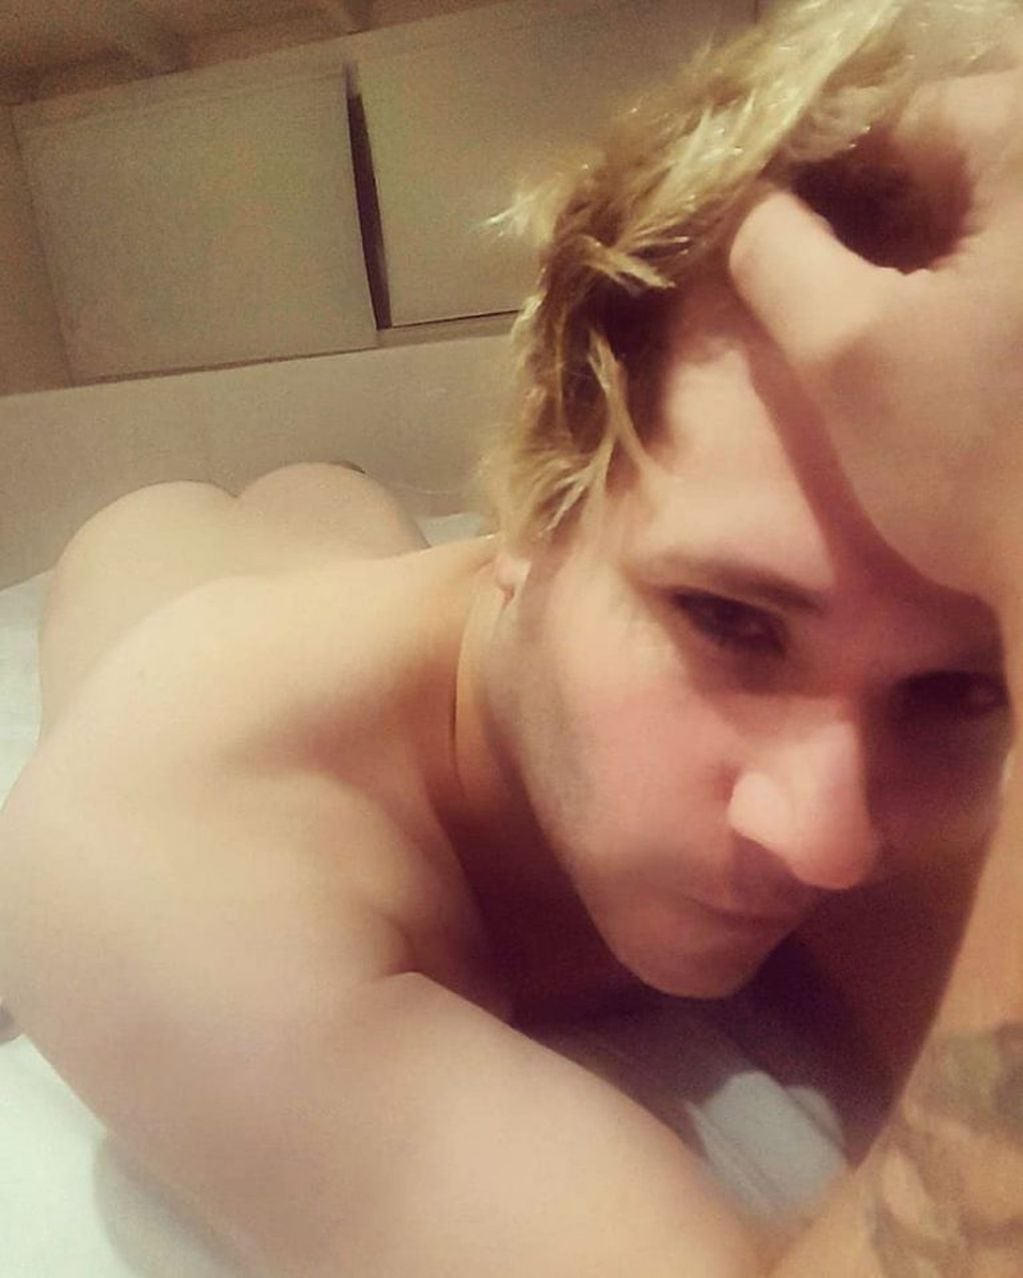 Tomasito Süller desafío la censura de Instagram con dos fotos totalmente desnudo (Instagram @elgrantomasito)